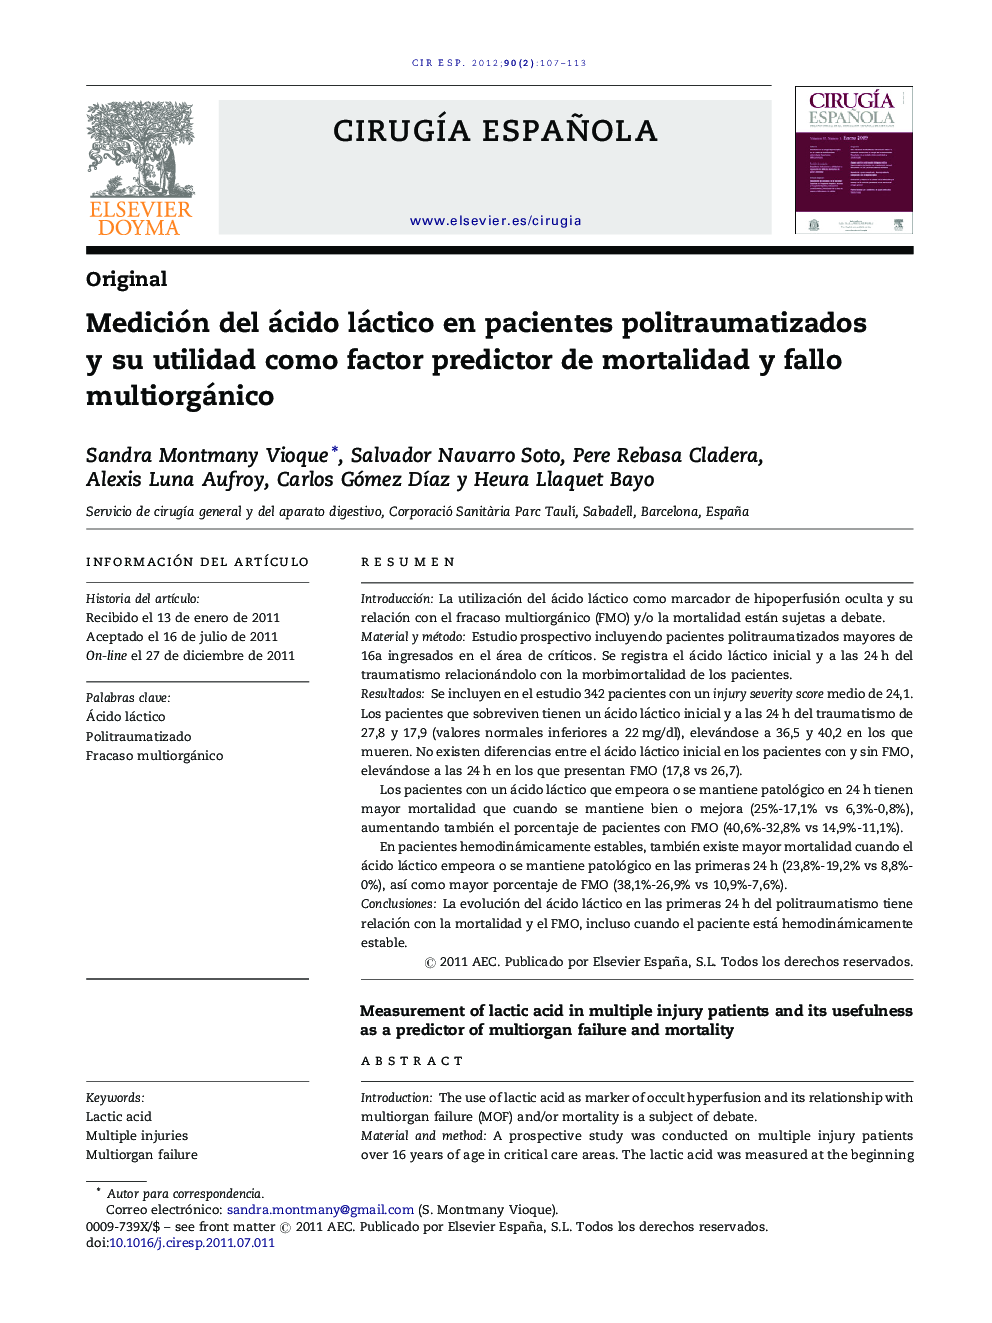 Medición del ácido láctico en pacientes politraumatizados y su utilidad como factor predictor de mortalidad y fallo multiorgánico